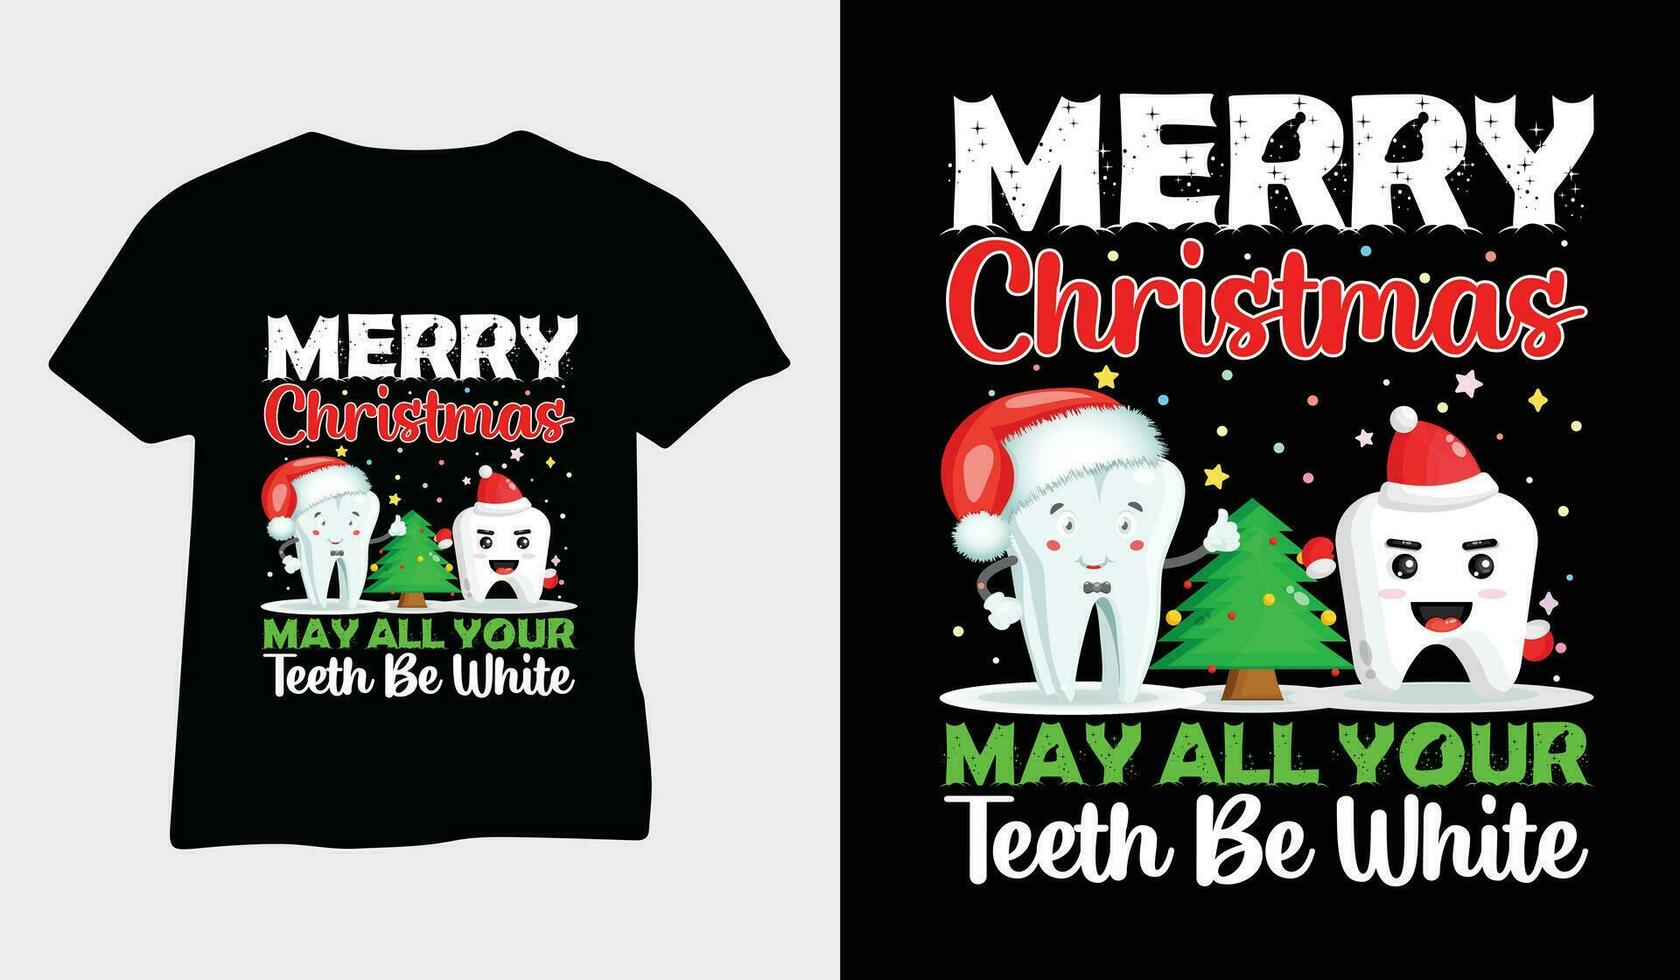 fröhlich Weihnachten kann alle Ihre Zähne Sein Weiß. Weihnachten Design Elemente, Vektor. Weihnachten T-Shirt deisgn vektor